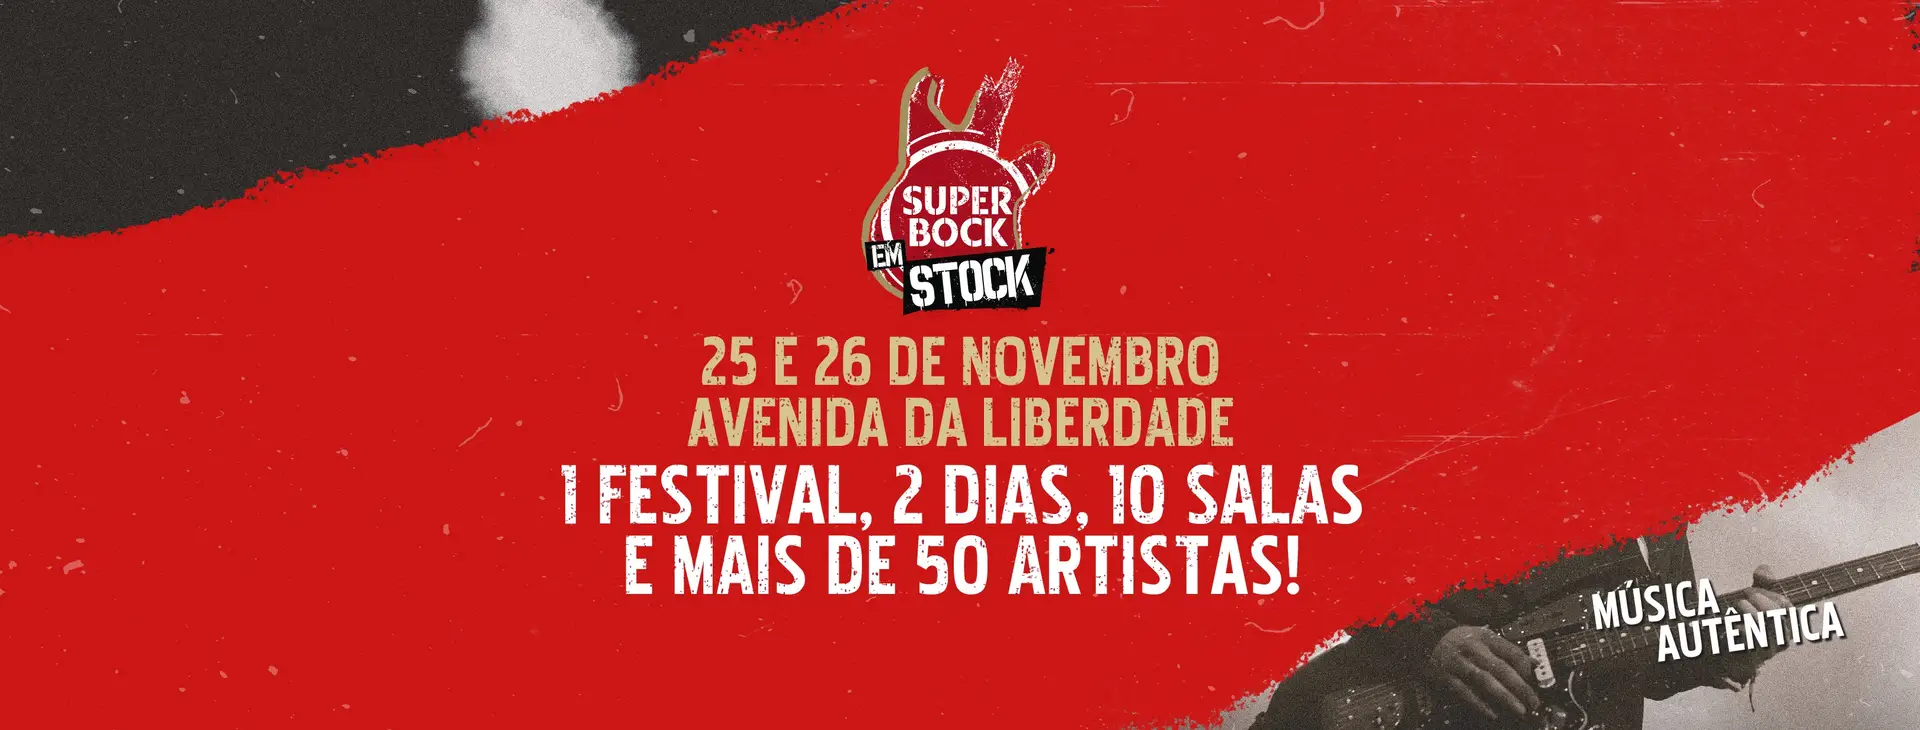 Já são conhecidas as primeiras confirmações do Super Bock em Stock